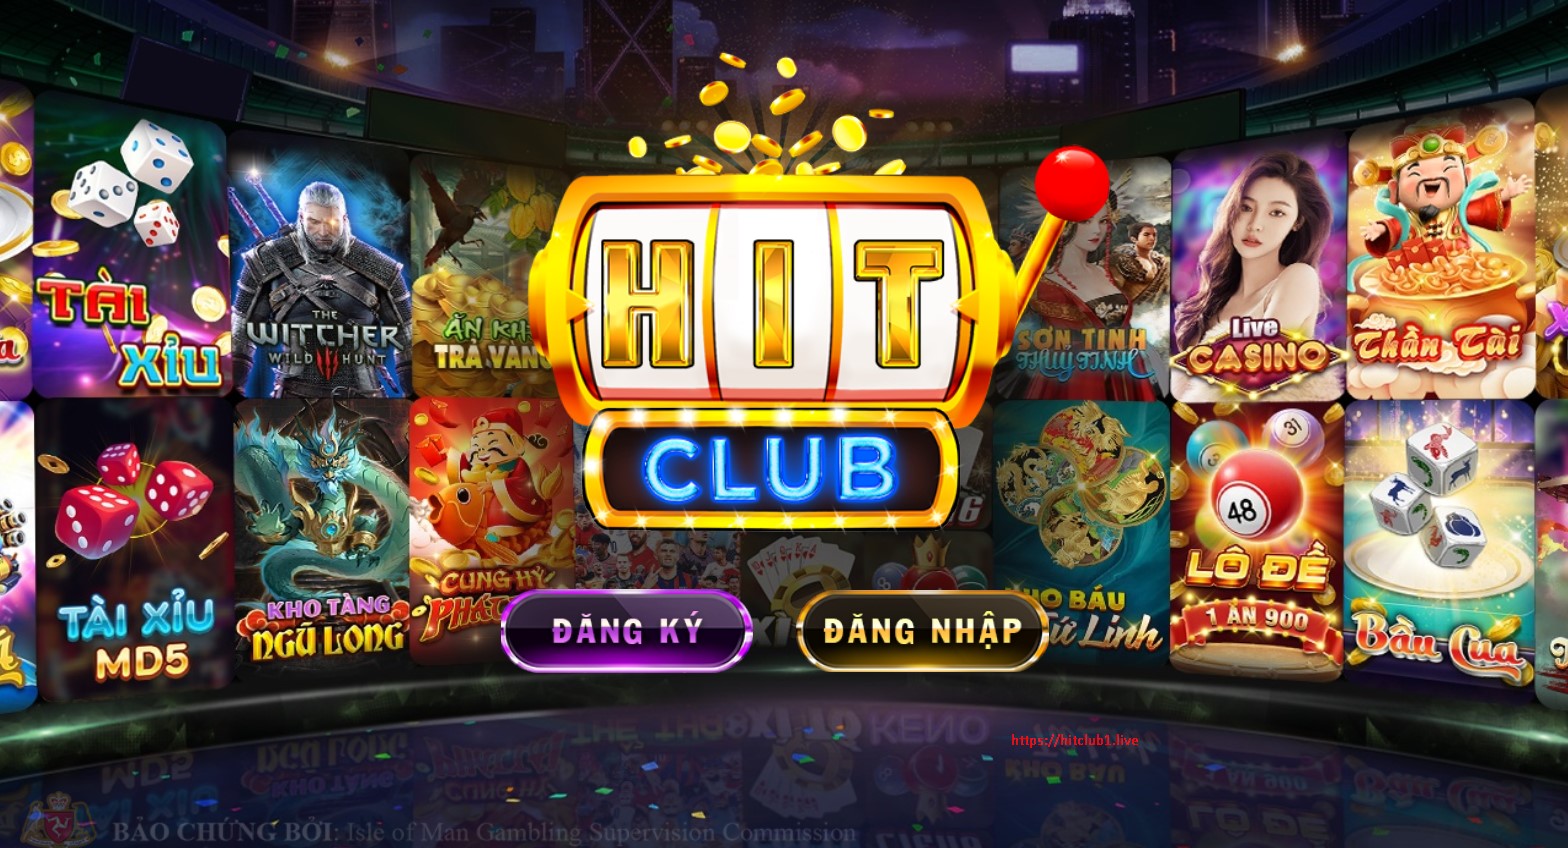 Giới thiệu Hit Club- Cổng game bài đổi thưởng uy tín hàng đầu Việt Nam